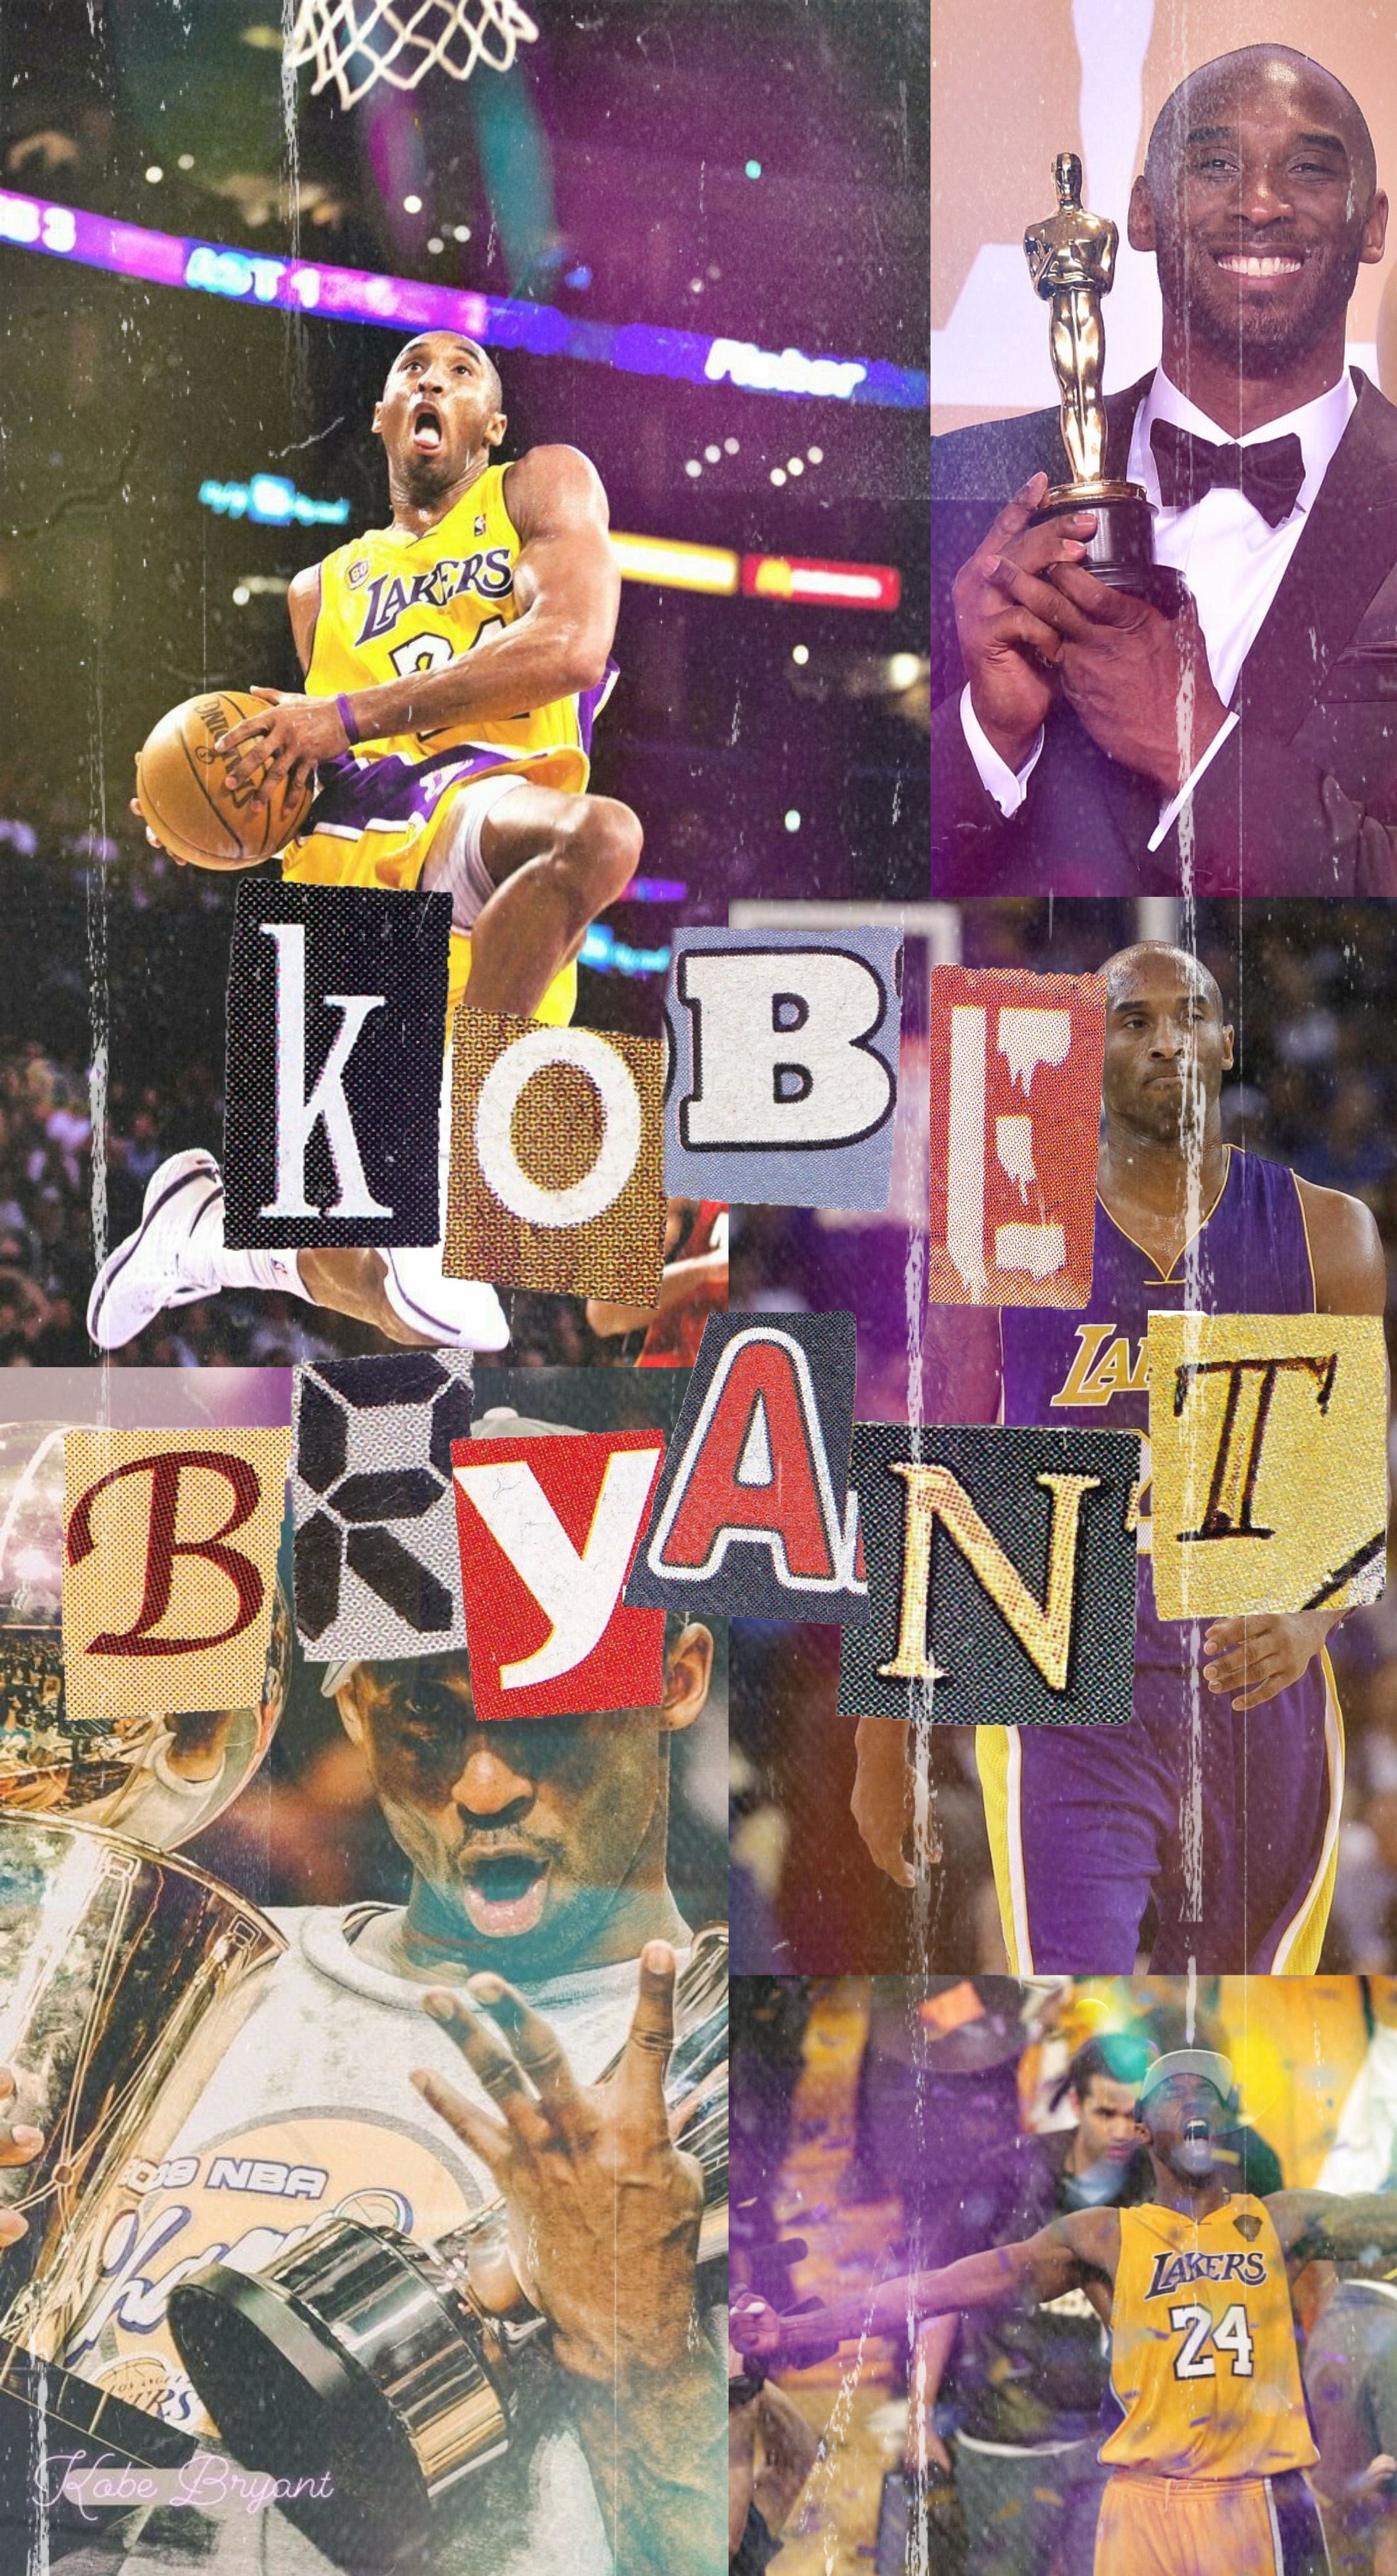 Kobe Bryant wallpaper. Kobe bryant wallpaper, Kobe bryant poster, Kobe bryant iphone wallpaper